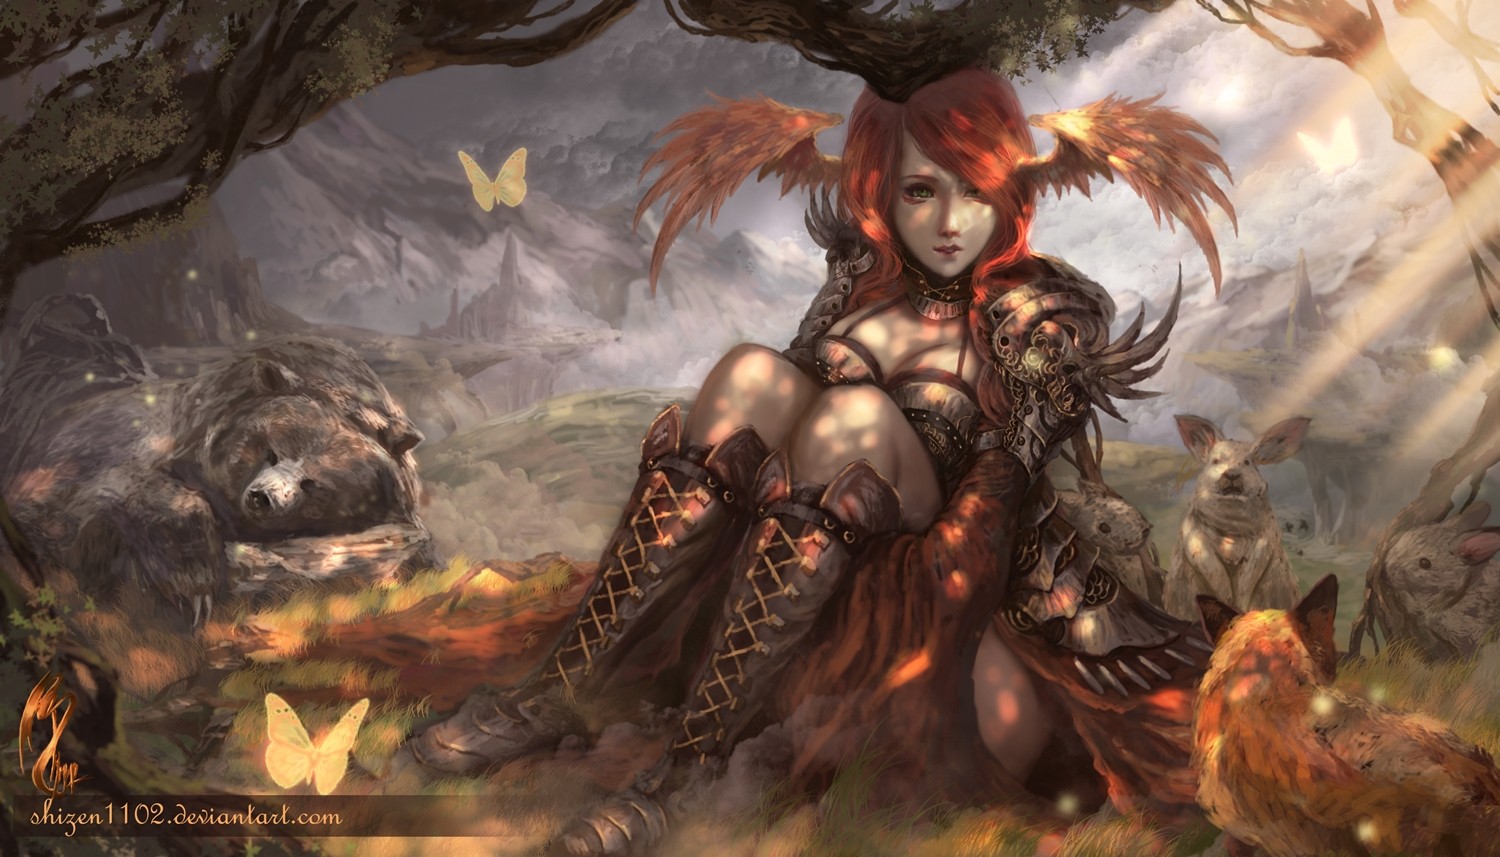 General 1500x857 fantasy art angel fantasy girl DeviantArt redhead